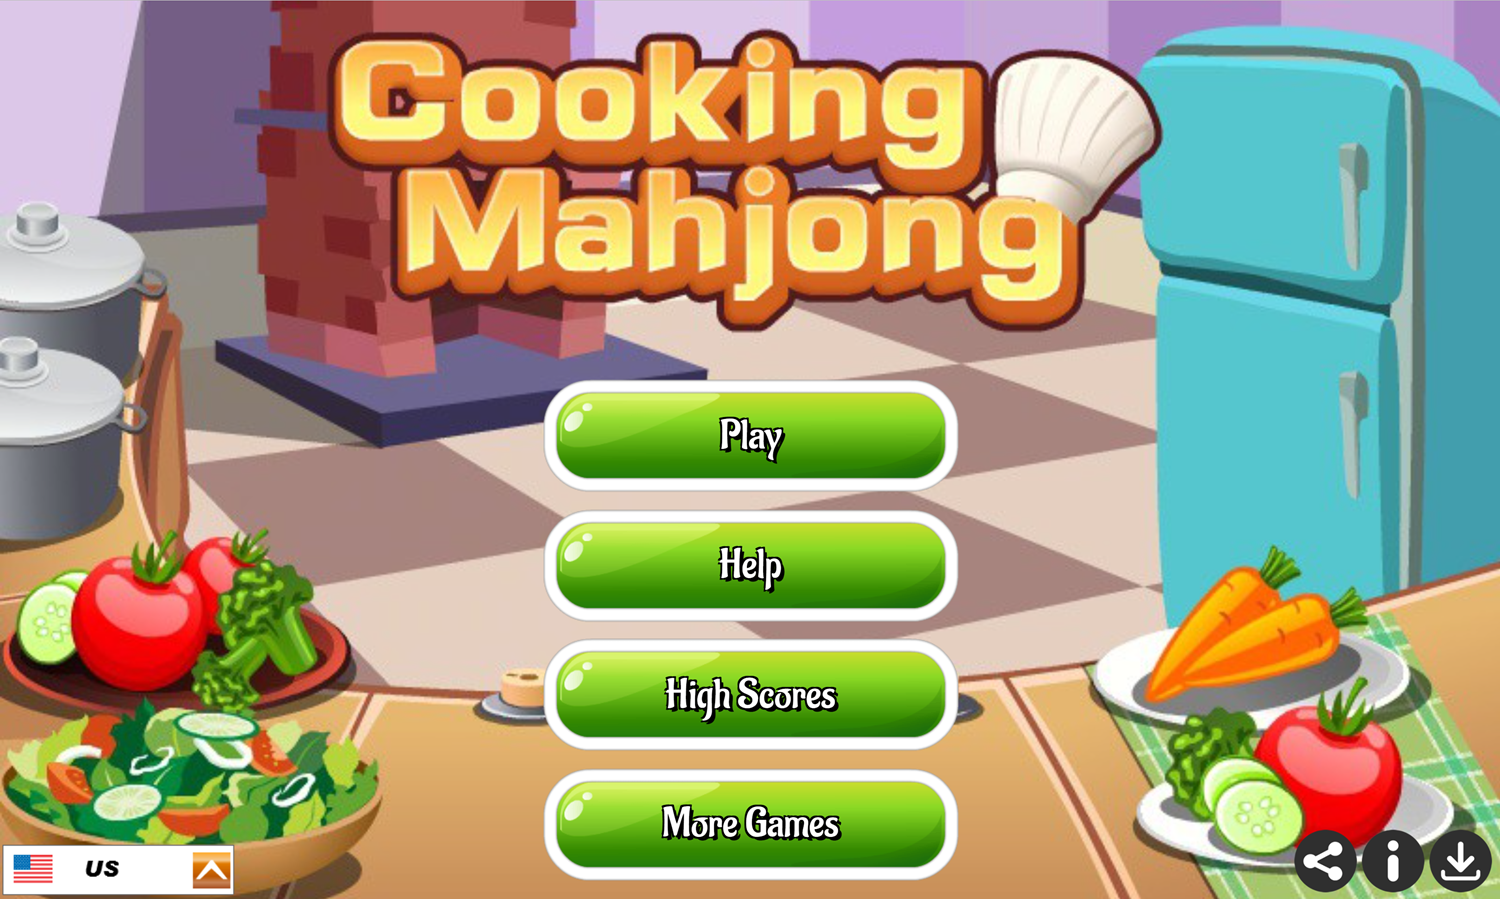 Cooking Mahjong Game Welcome Screen Screenshot.